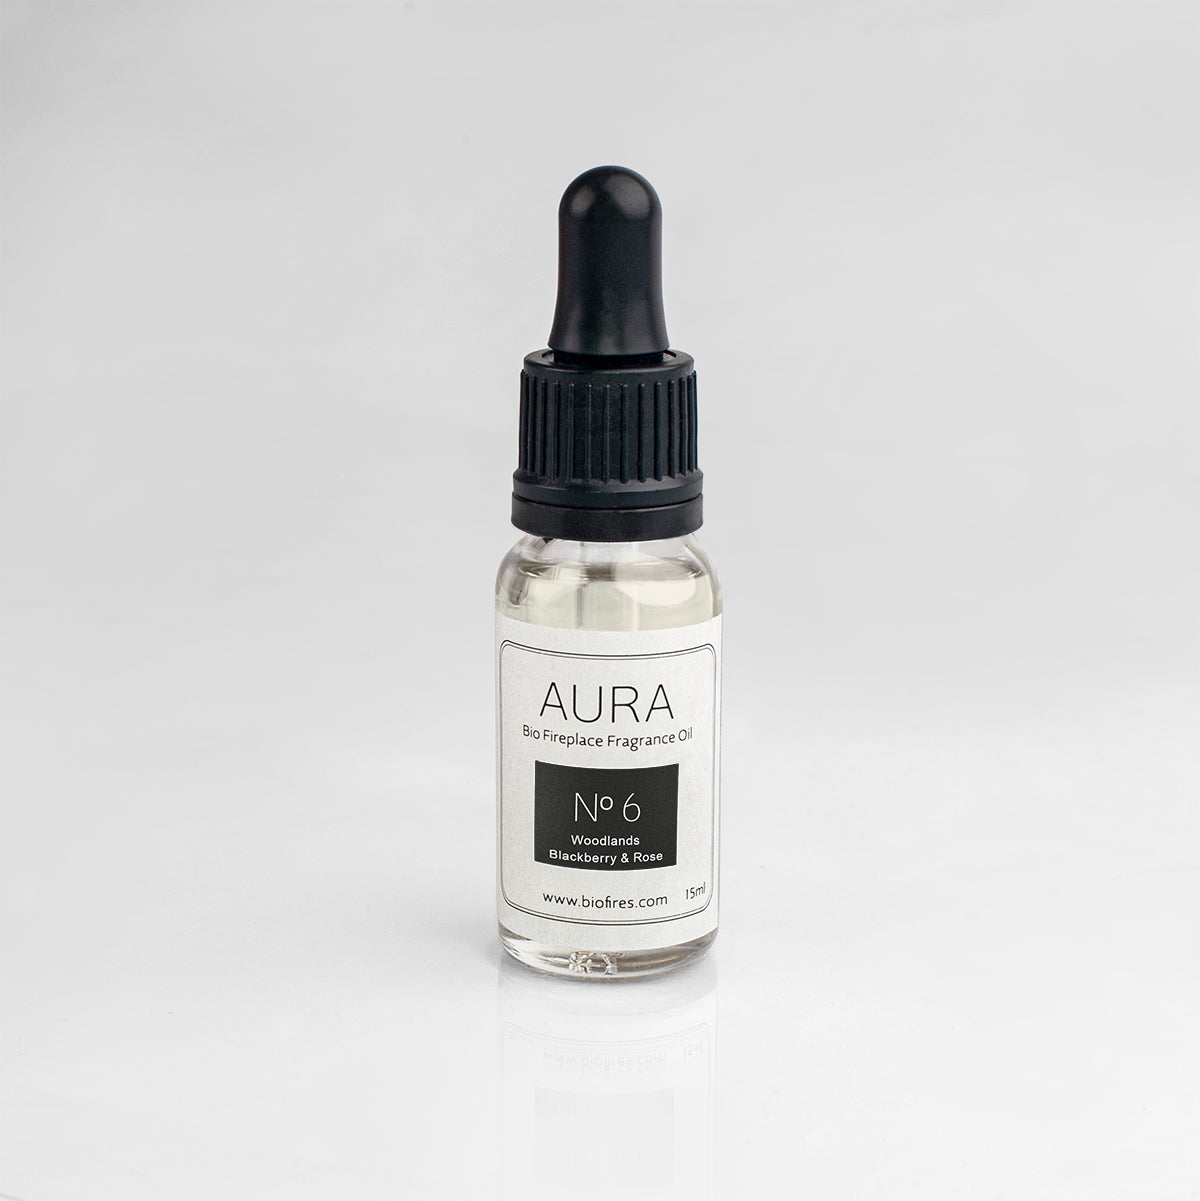 Aura Oil No.6 Fragrance – Woodlands Blackberry & Rose